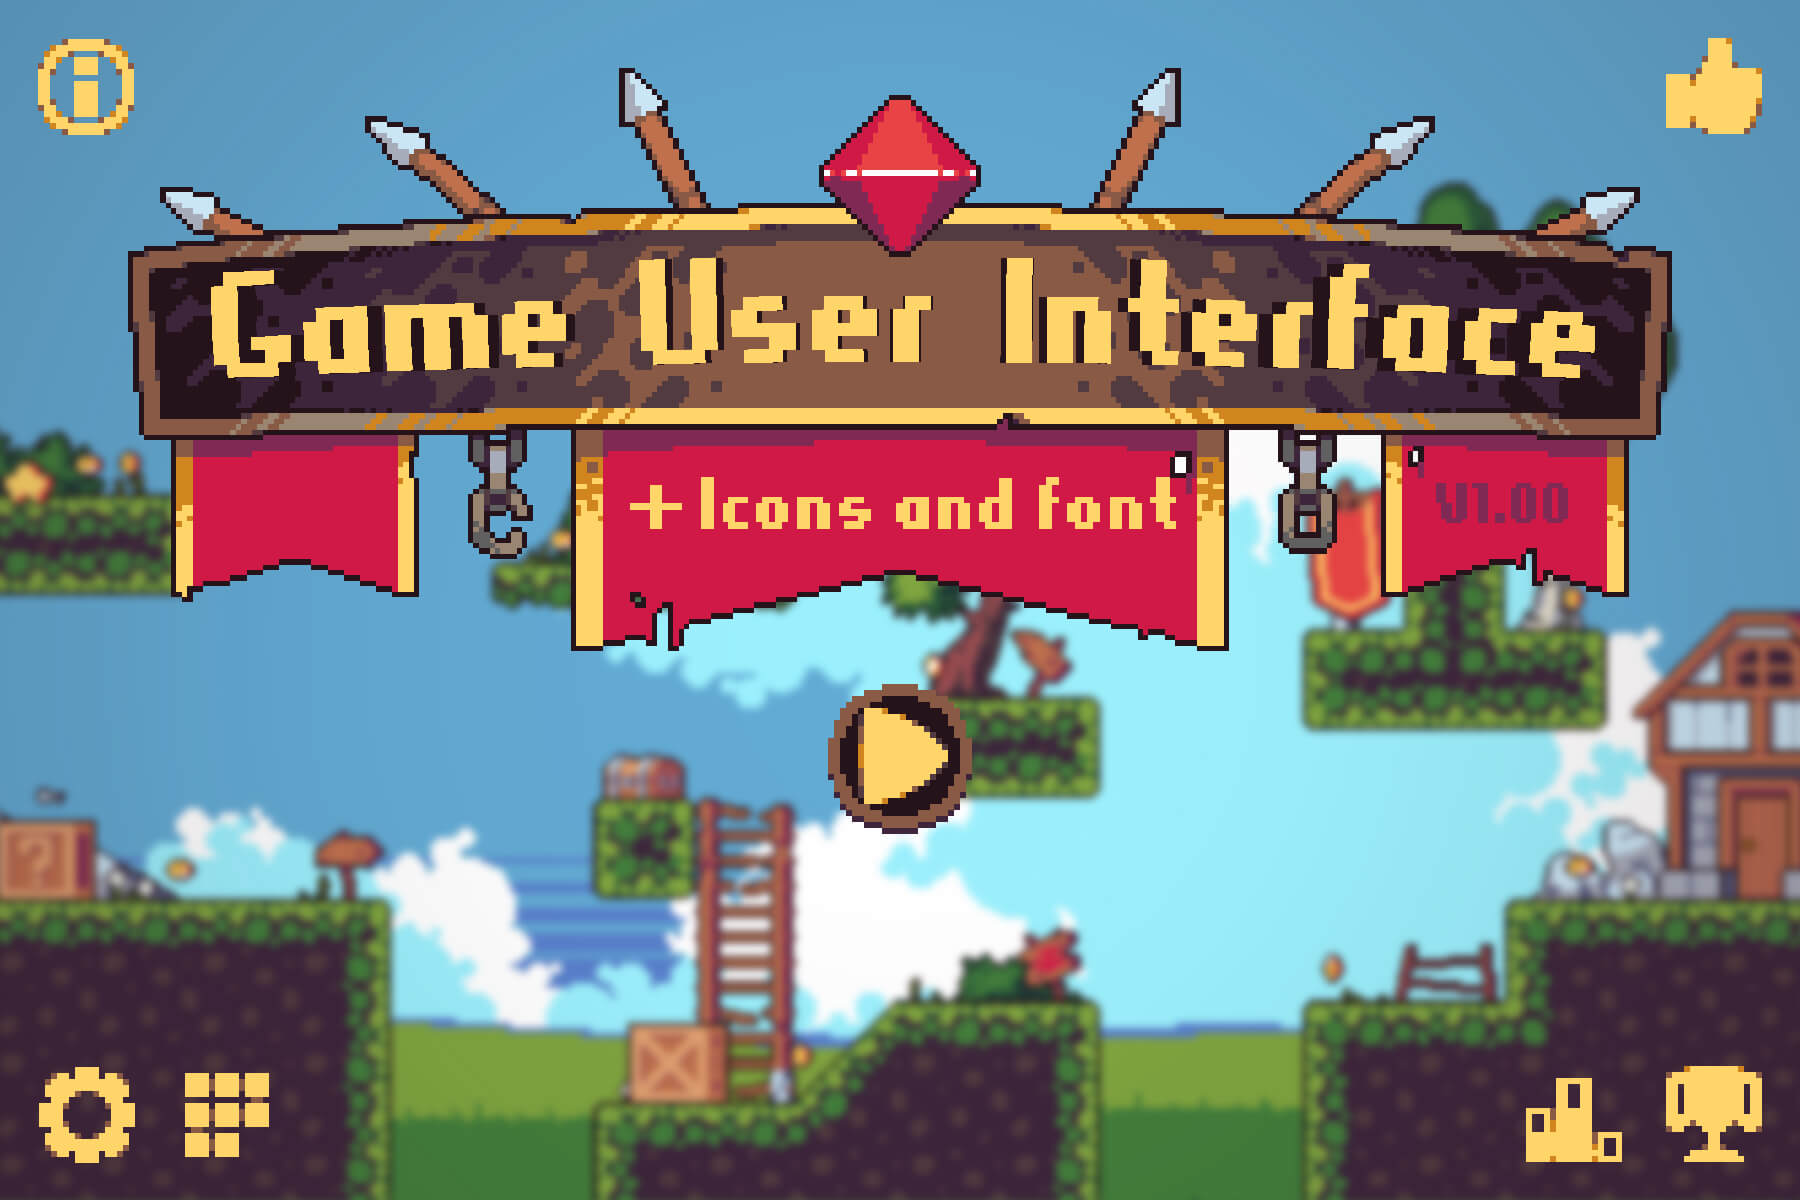 Game User Interface Pixel Art